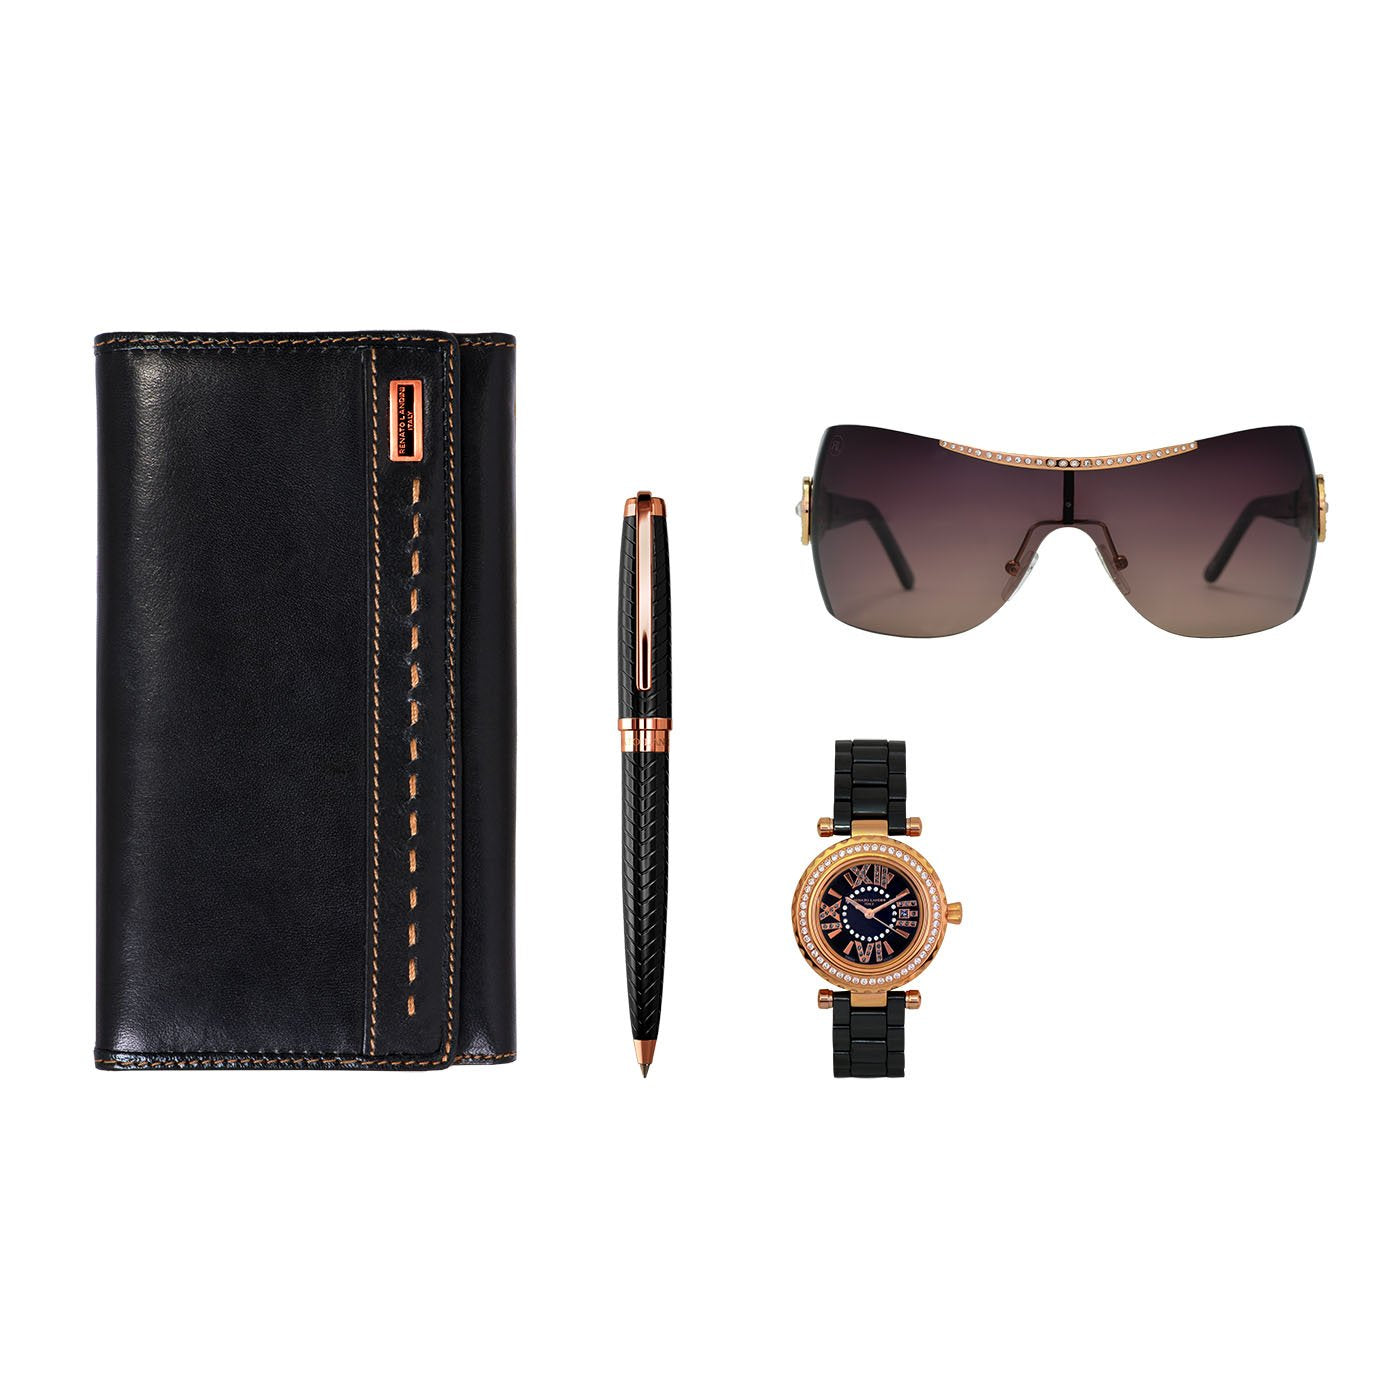 RENATO LANDINI Pen + Wallet + Watch + Sunglasses/ Women a